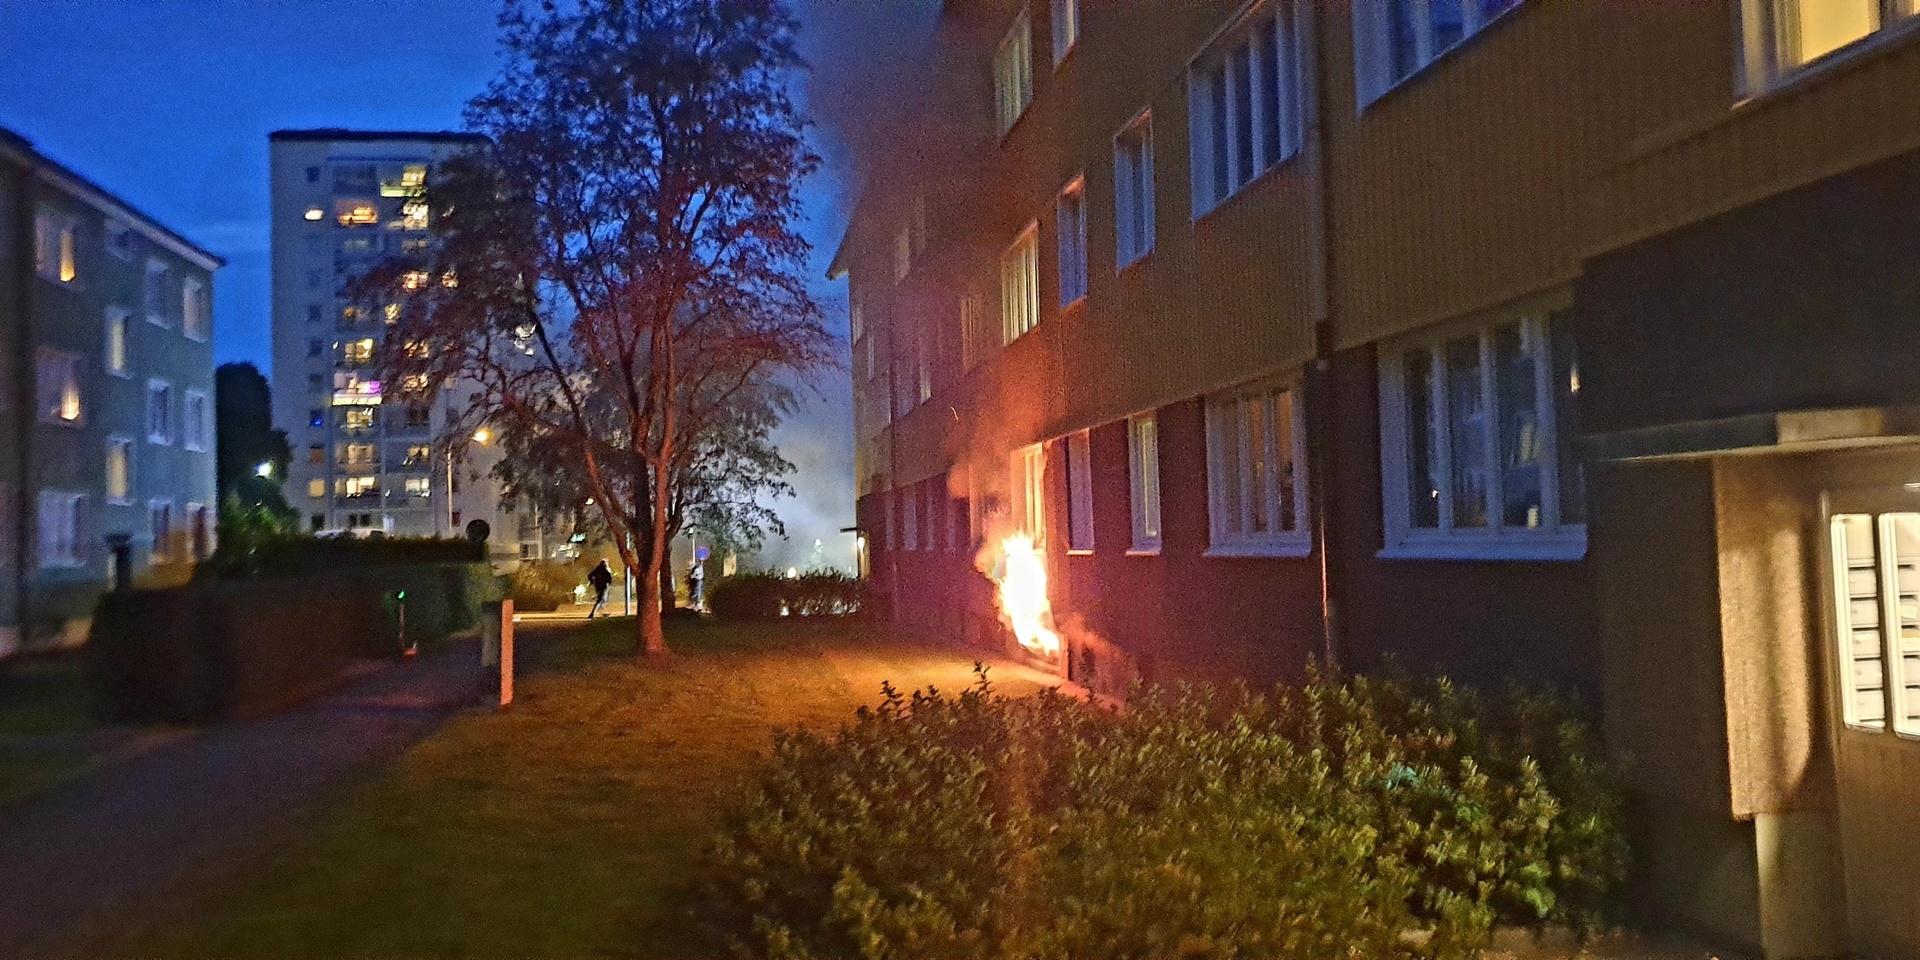 En person i 30-årsåldern har gripits under lördagen misstänkt för skadegörelse genom brand i Lundby. Händelsen är en av tre bränder i samma område under kort tid, och polisen utesluter inte att personen kan ha varit inblandad i samtliga.